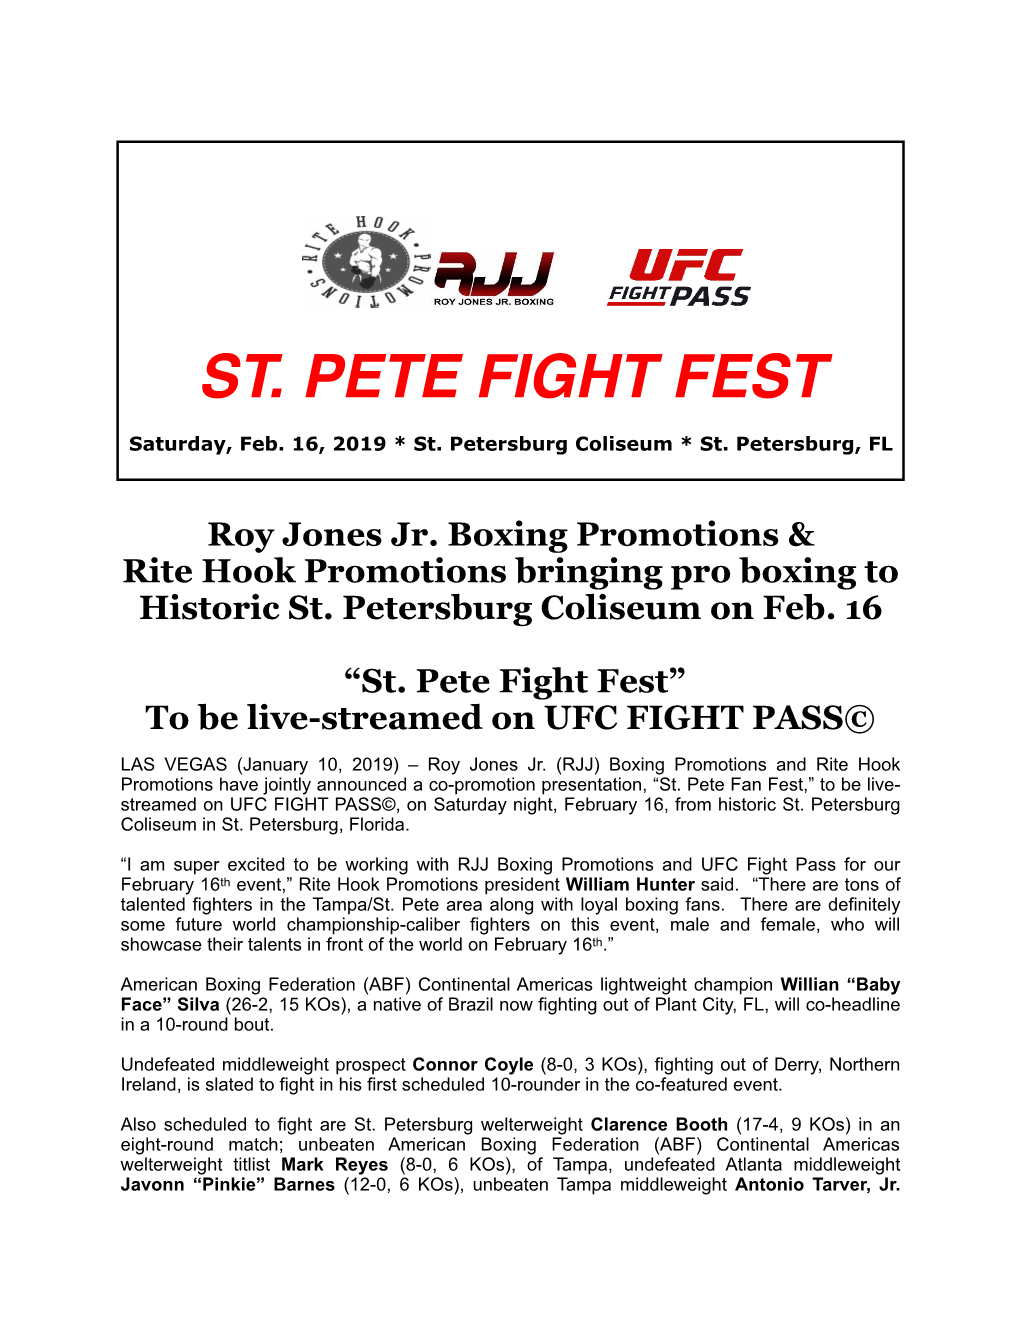 St. Pete Fight Fest